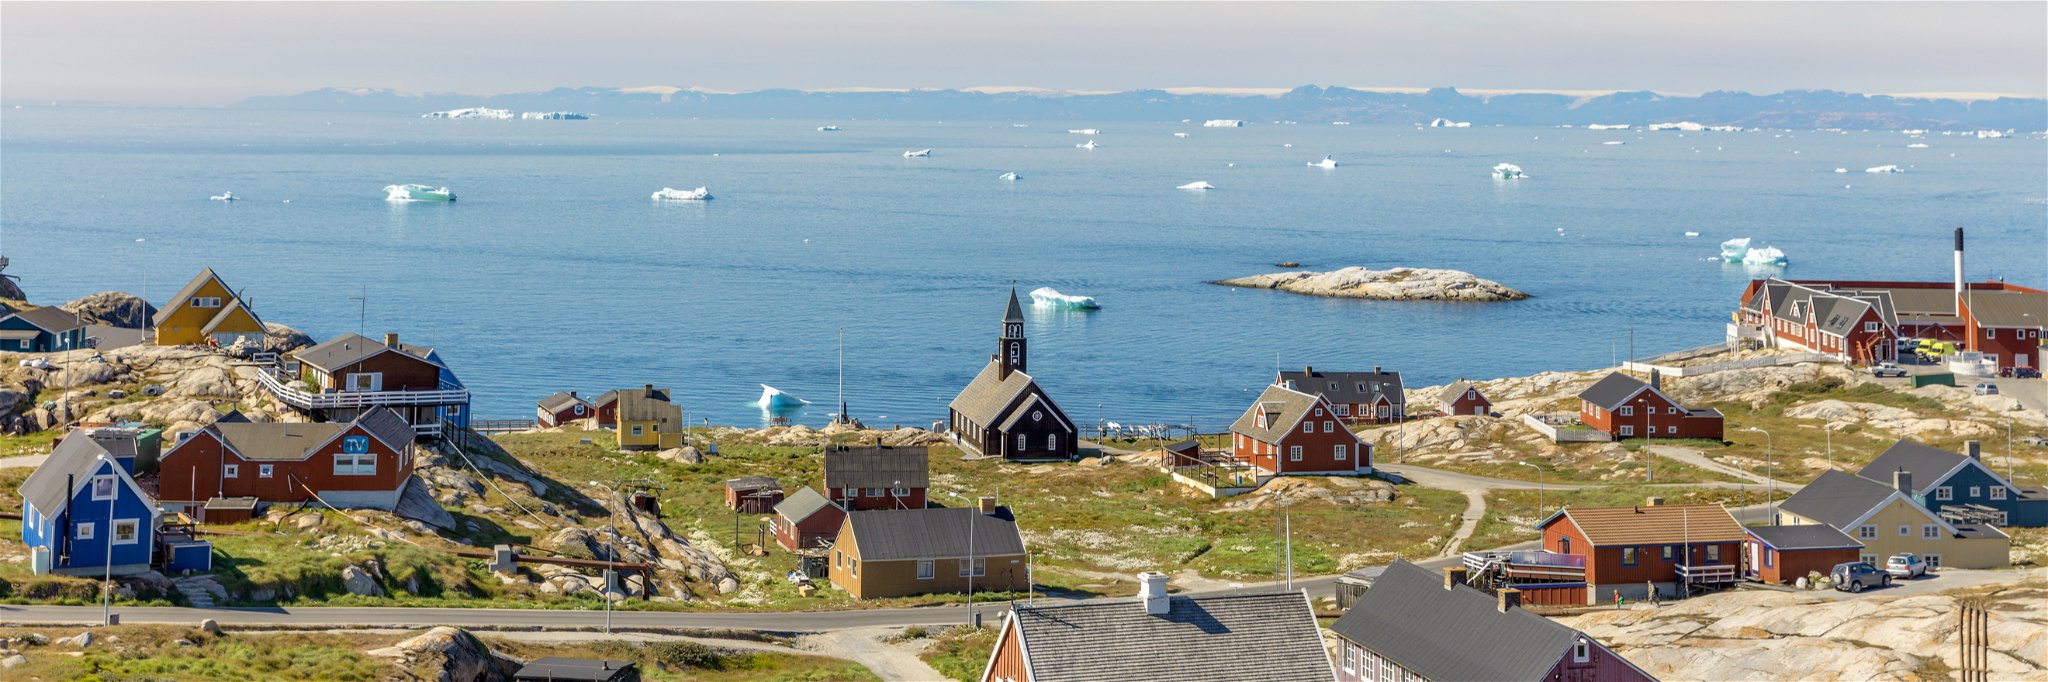 The Michelin-starred Koks will move to Ilimanaq, a 53-person village in Greenland